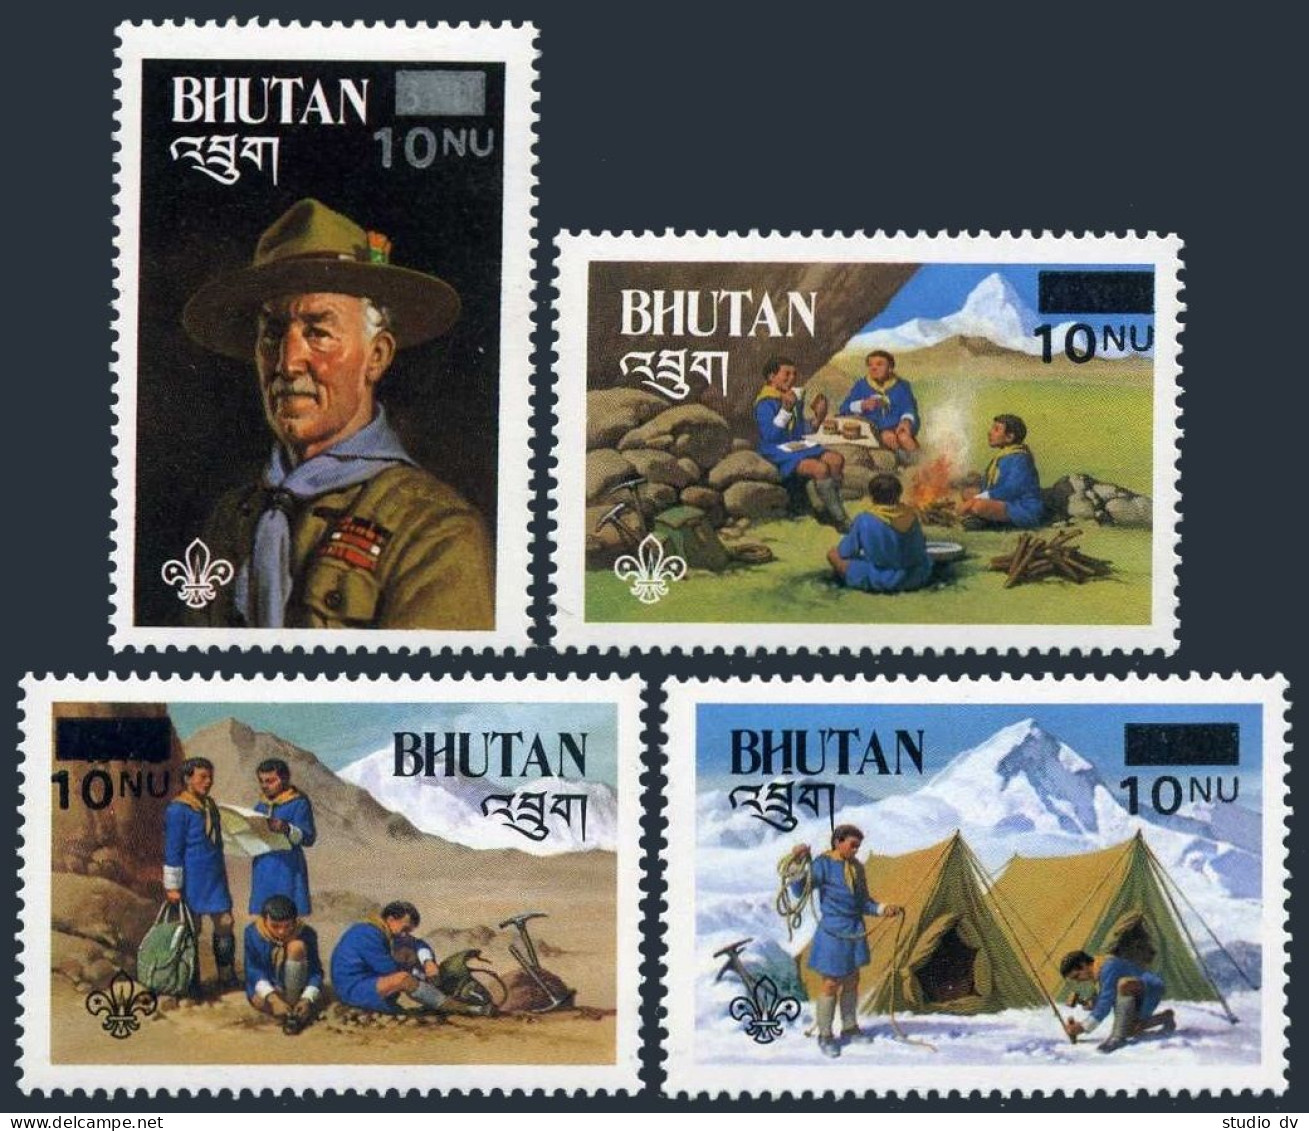 Bhutan 450-453,MNH.Michel 913-916. Boy Scouts-1982-new Value,1985.Baden-Powell. - Bhutan